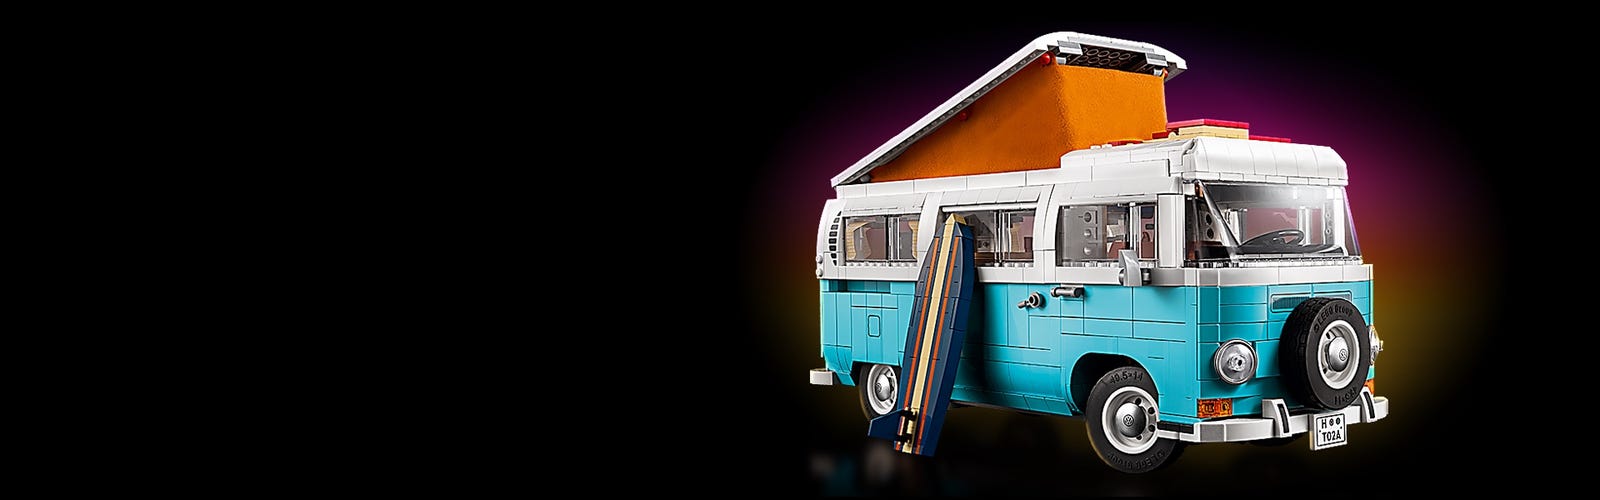 LEGO IDEAS - Converted Camper Van